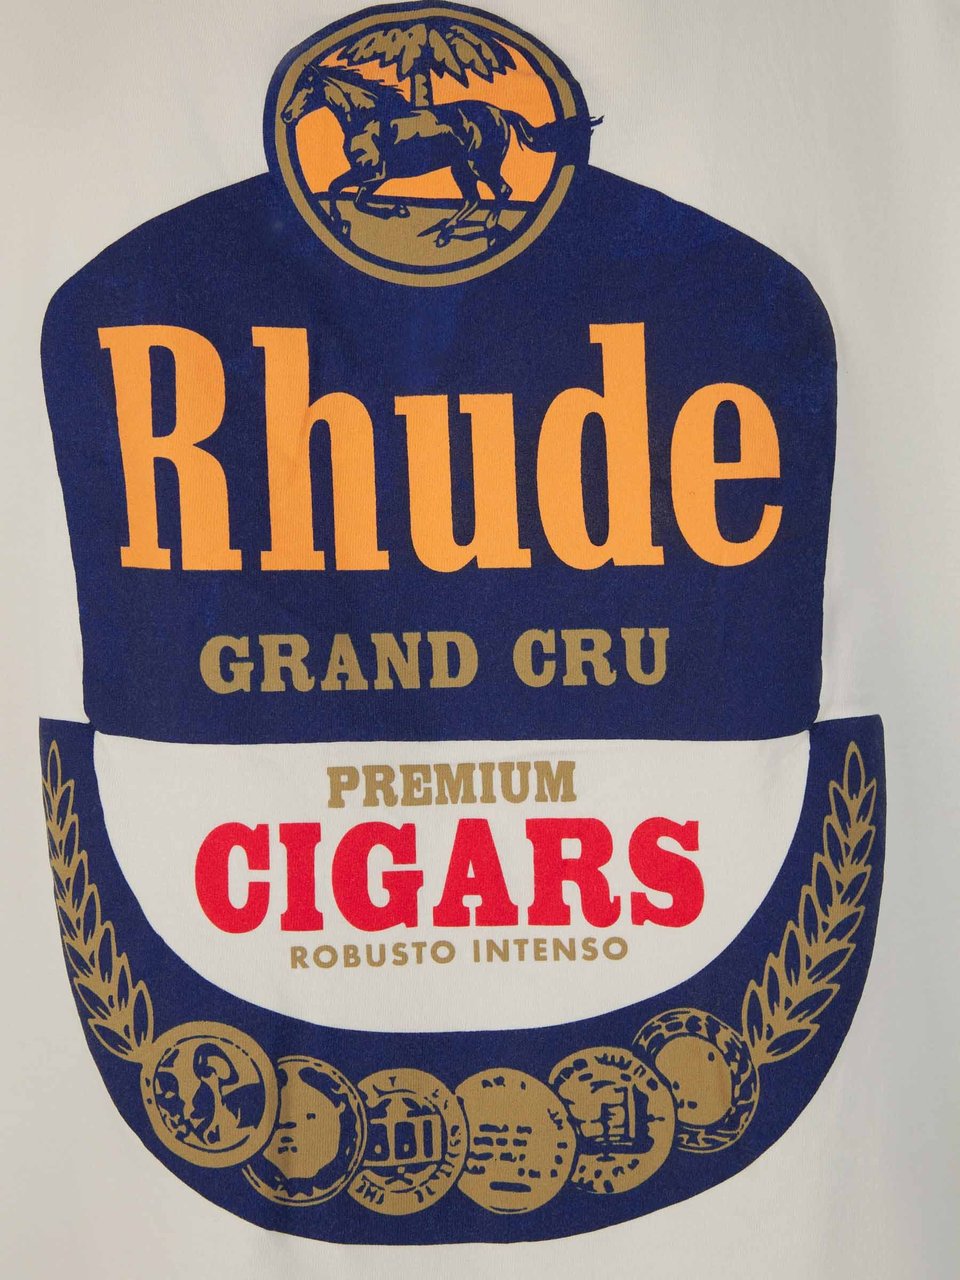 Rhude Grand Cru Printed T-Shirt Beige